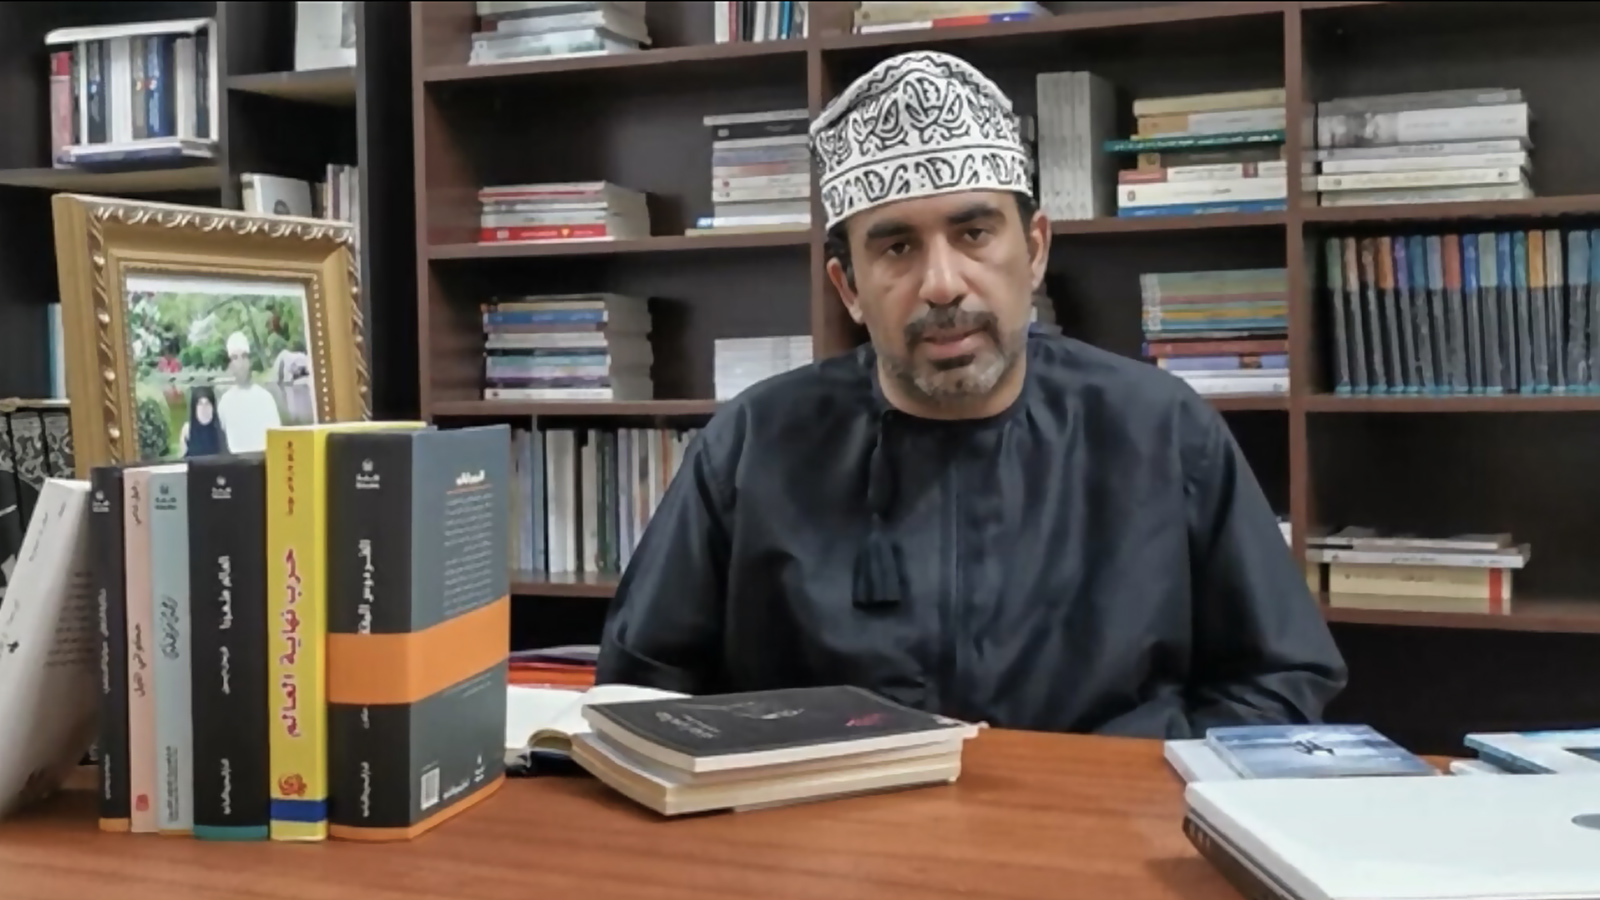 أسس الكاتب العُماني حمود الشيكلي قناة على يوتيوب لتكون نافذة ثقافية في العالم الافتراضي (الجزيرة)